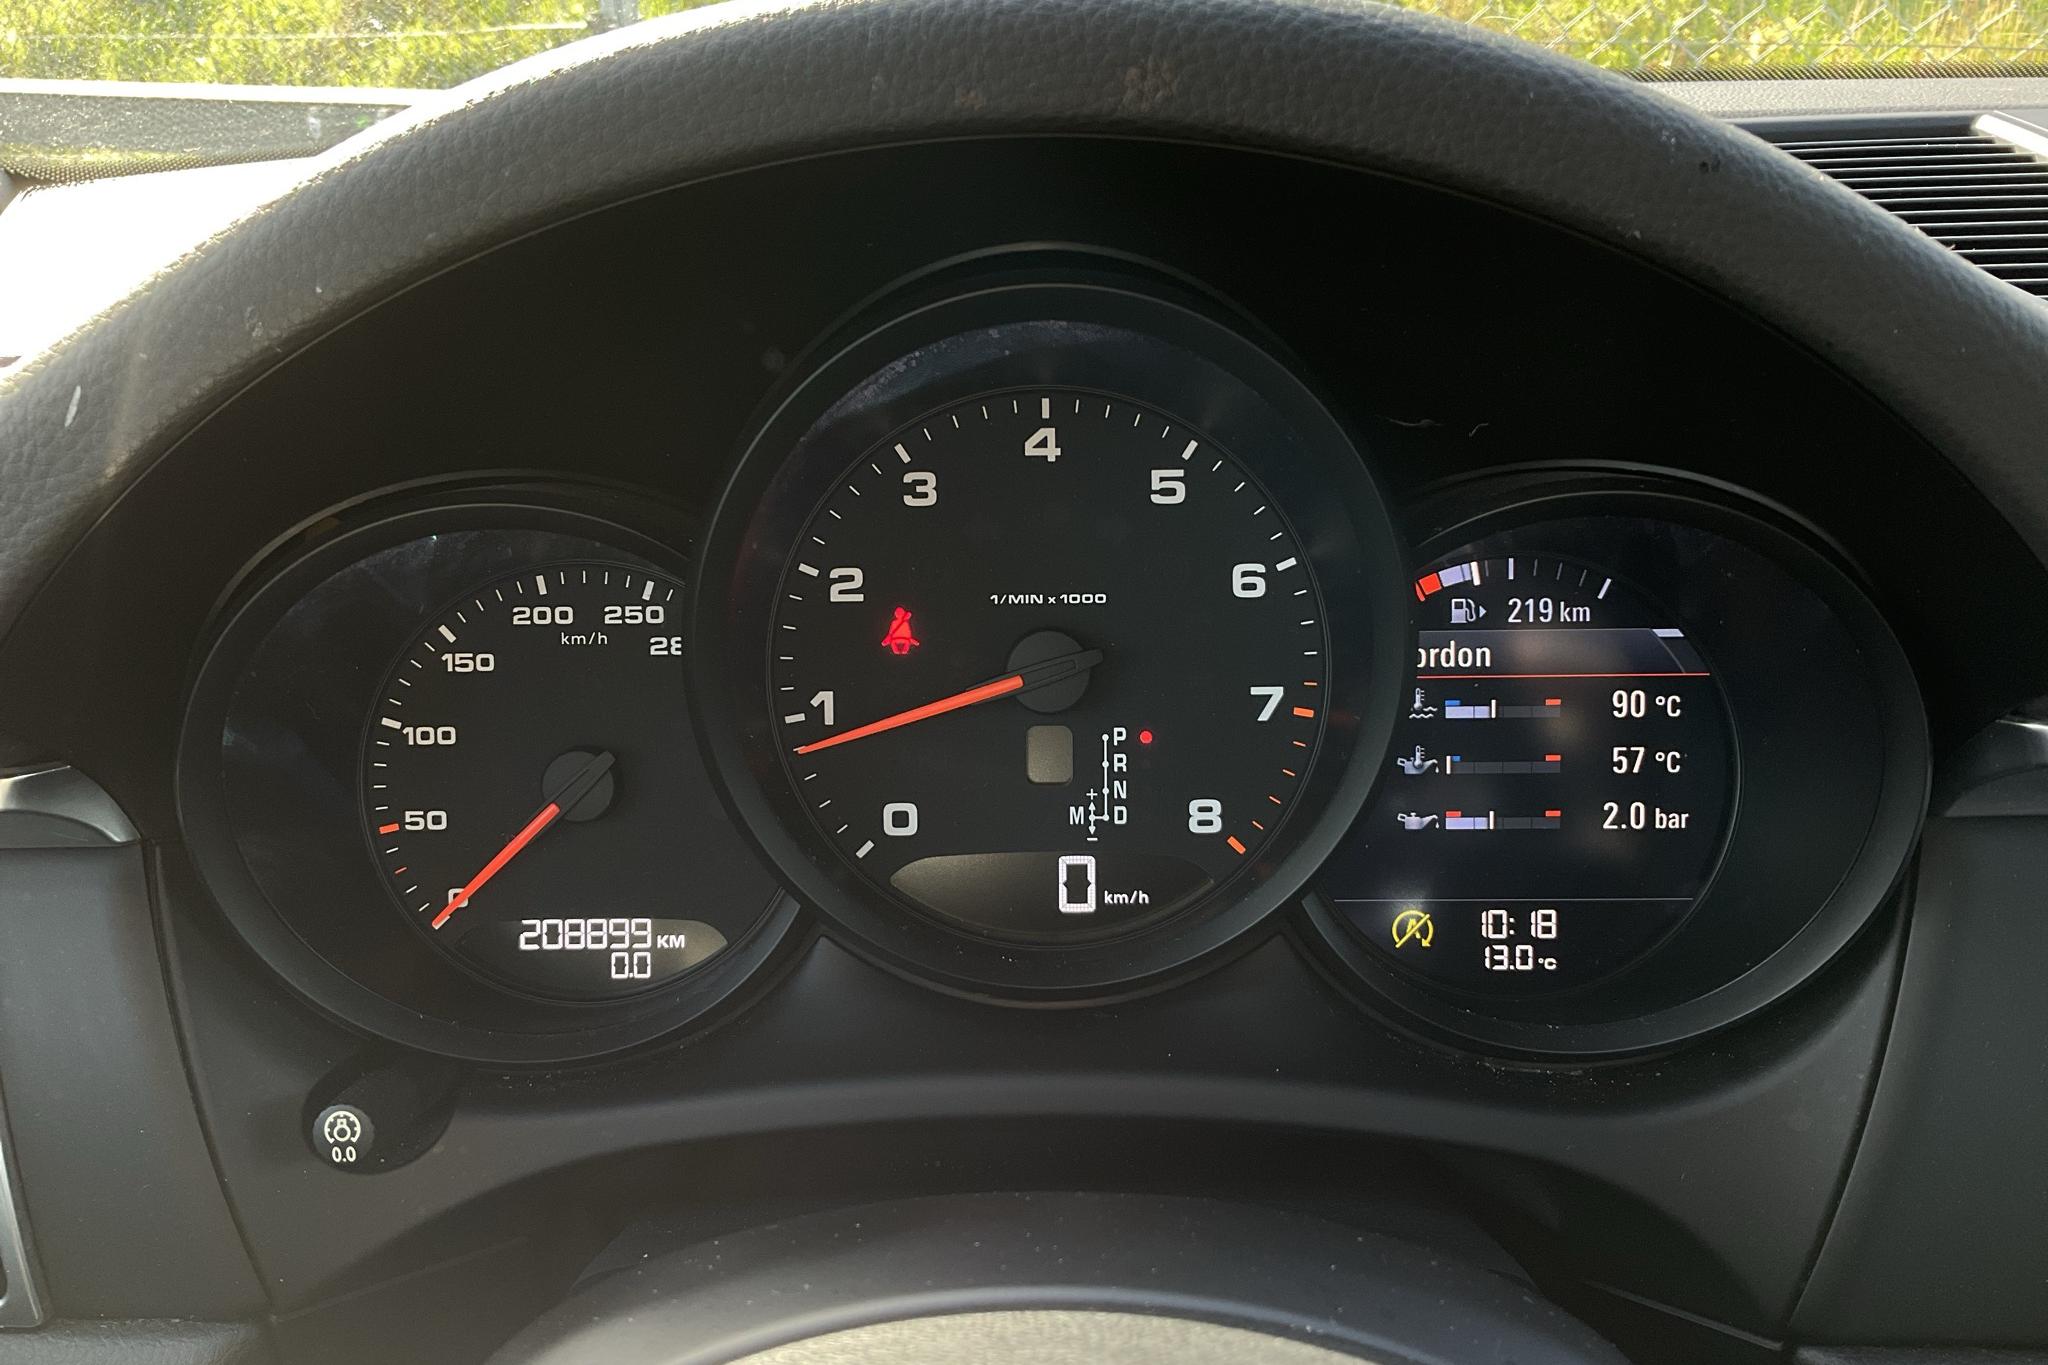 Porsche Macan 2.0 (252hk) - 208 900 km - Automatic - white - 2018